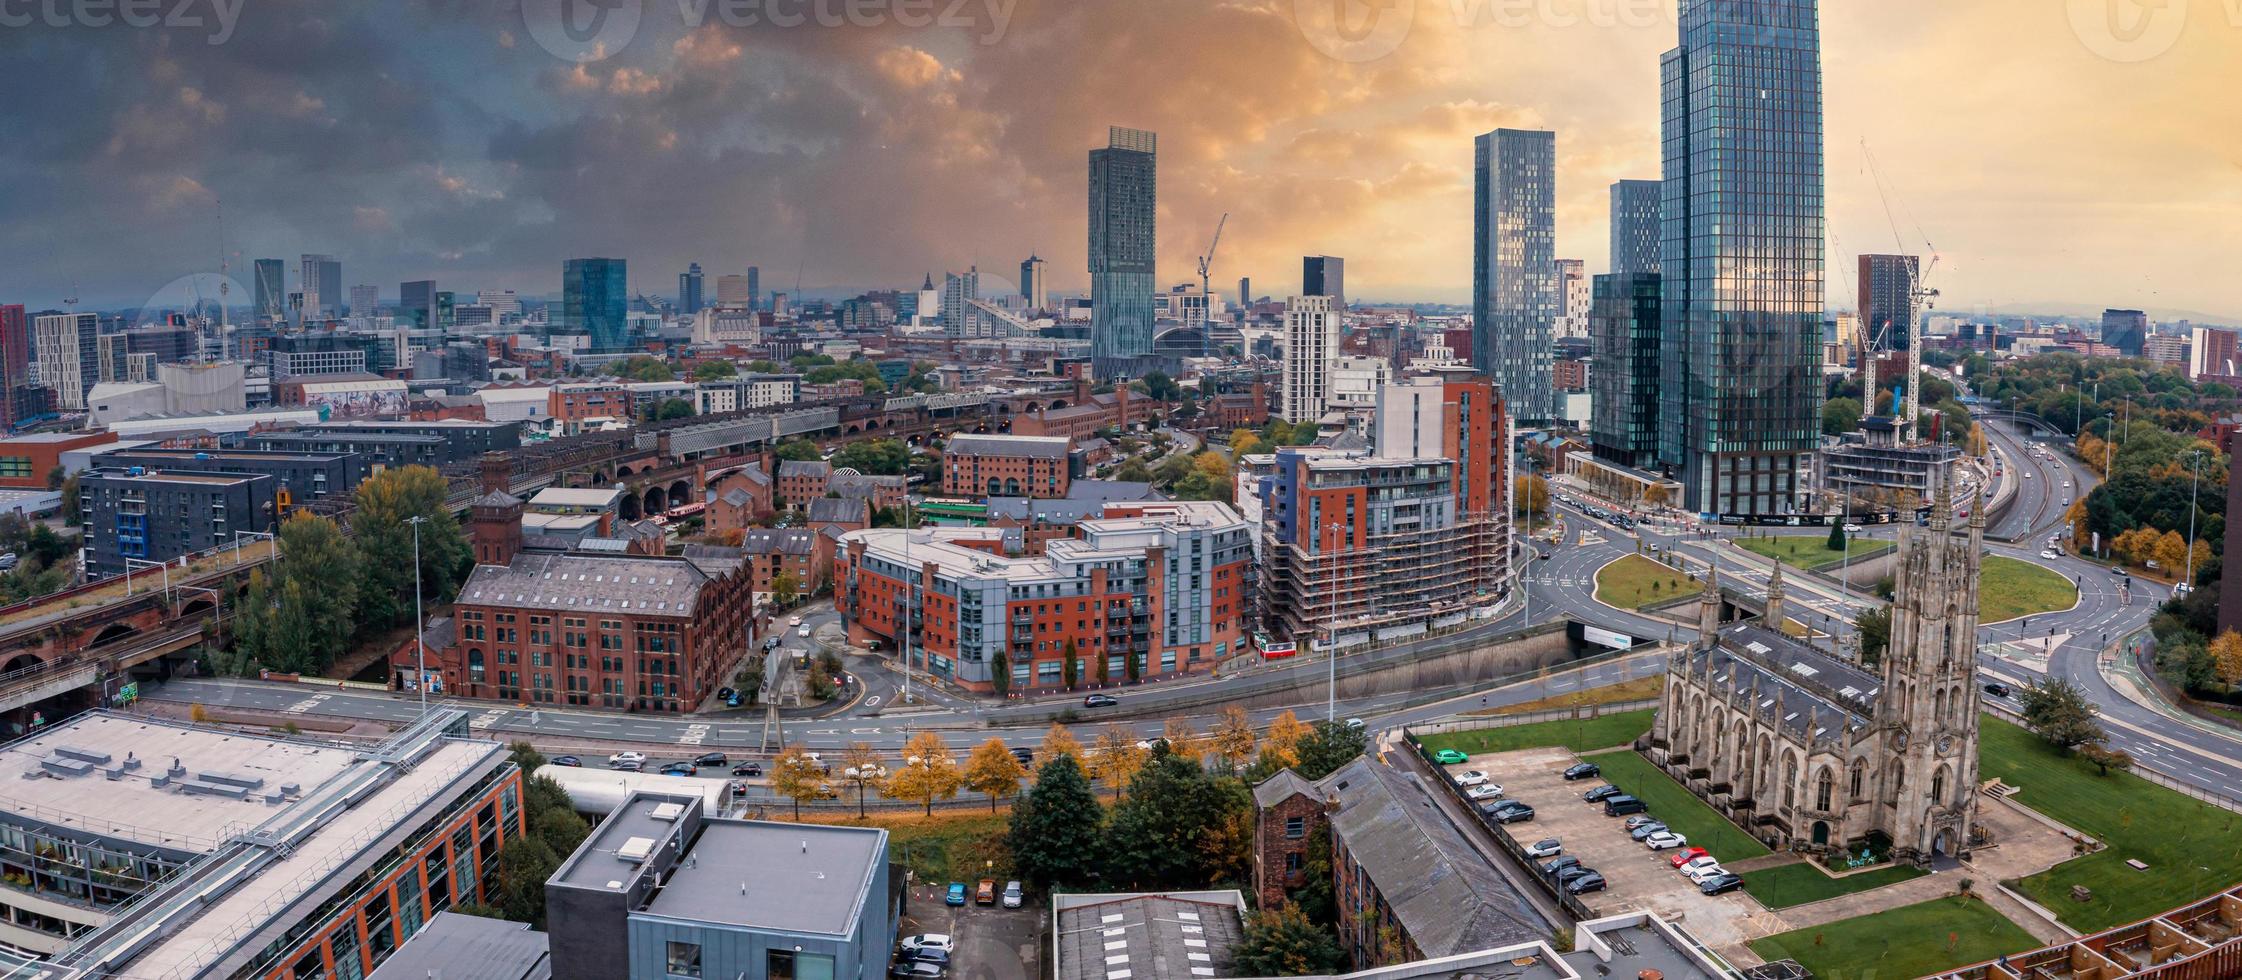 Luftaufnahme von Manchester City in Großbritannien foto